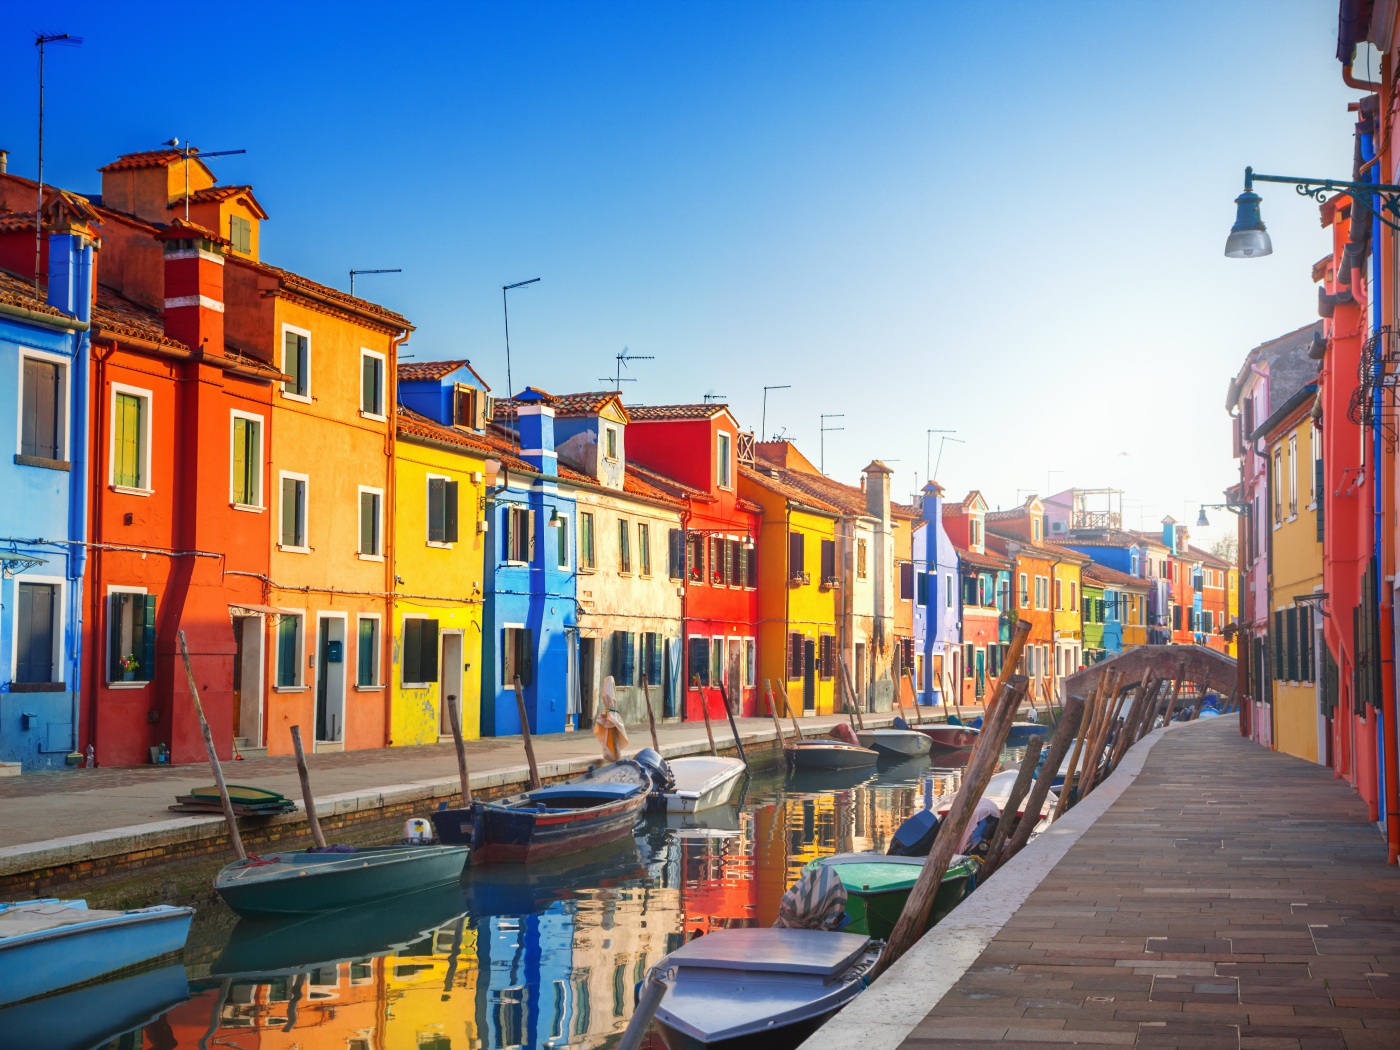 Разноцветные дома у водного канала с лодками, Италия